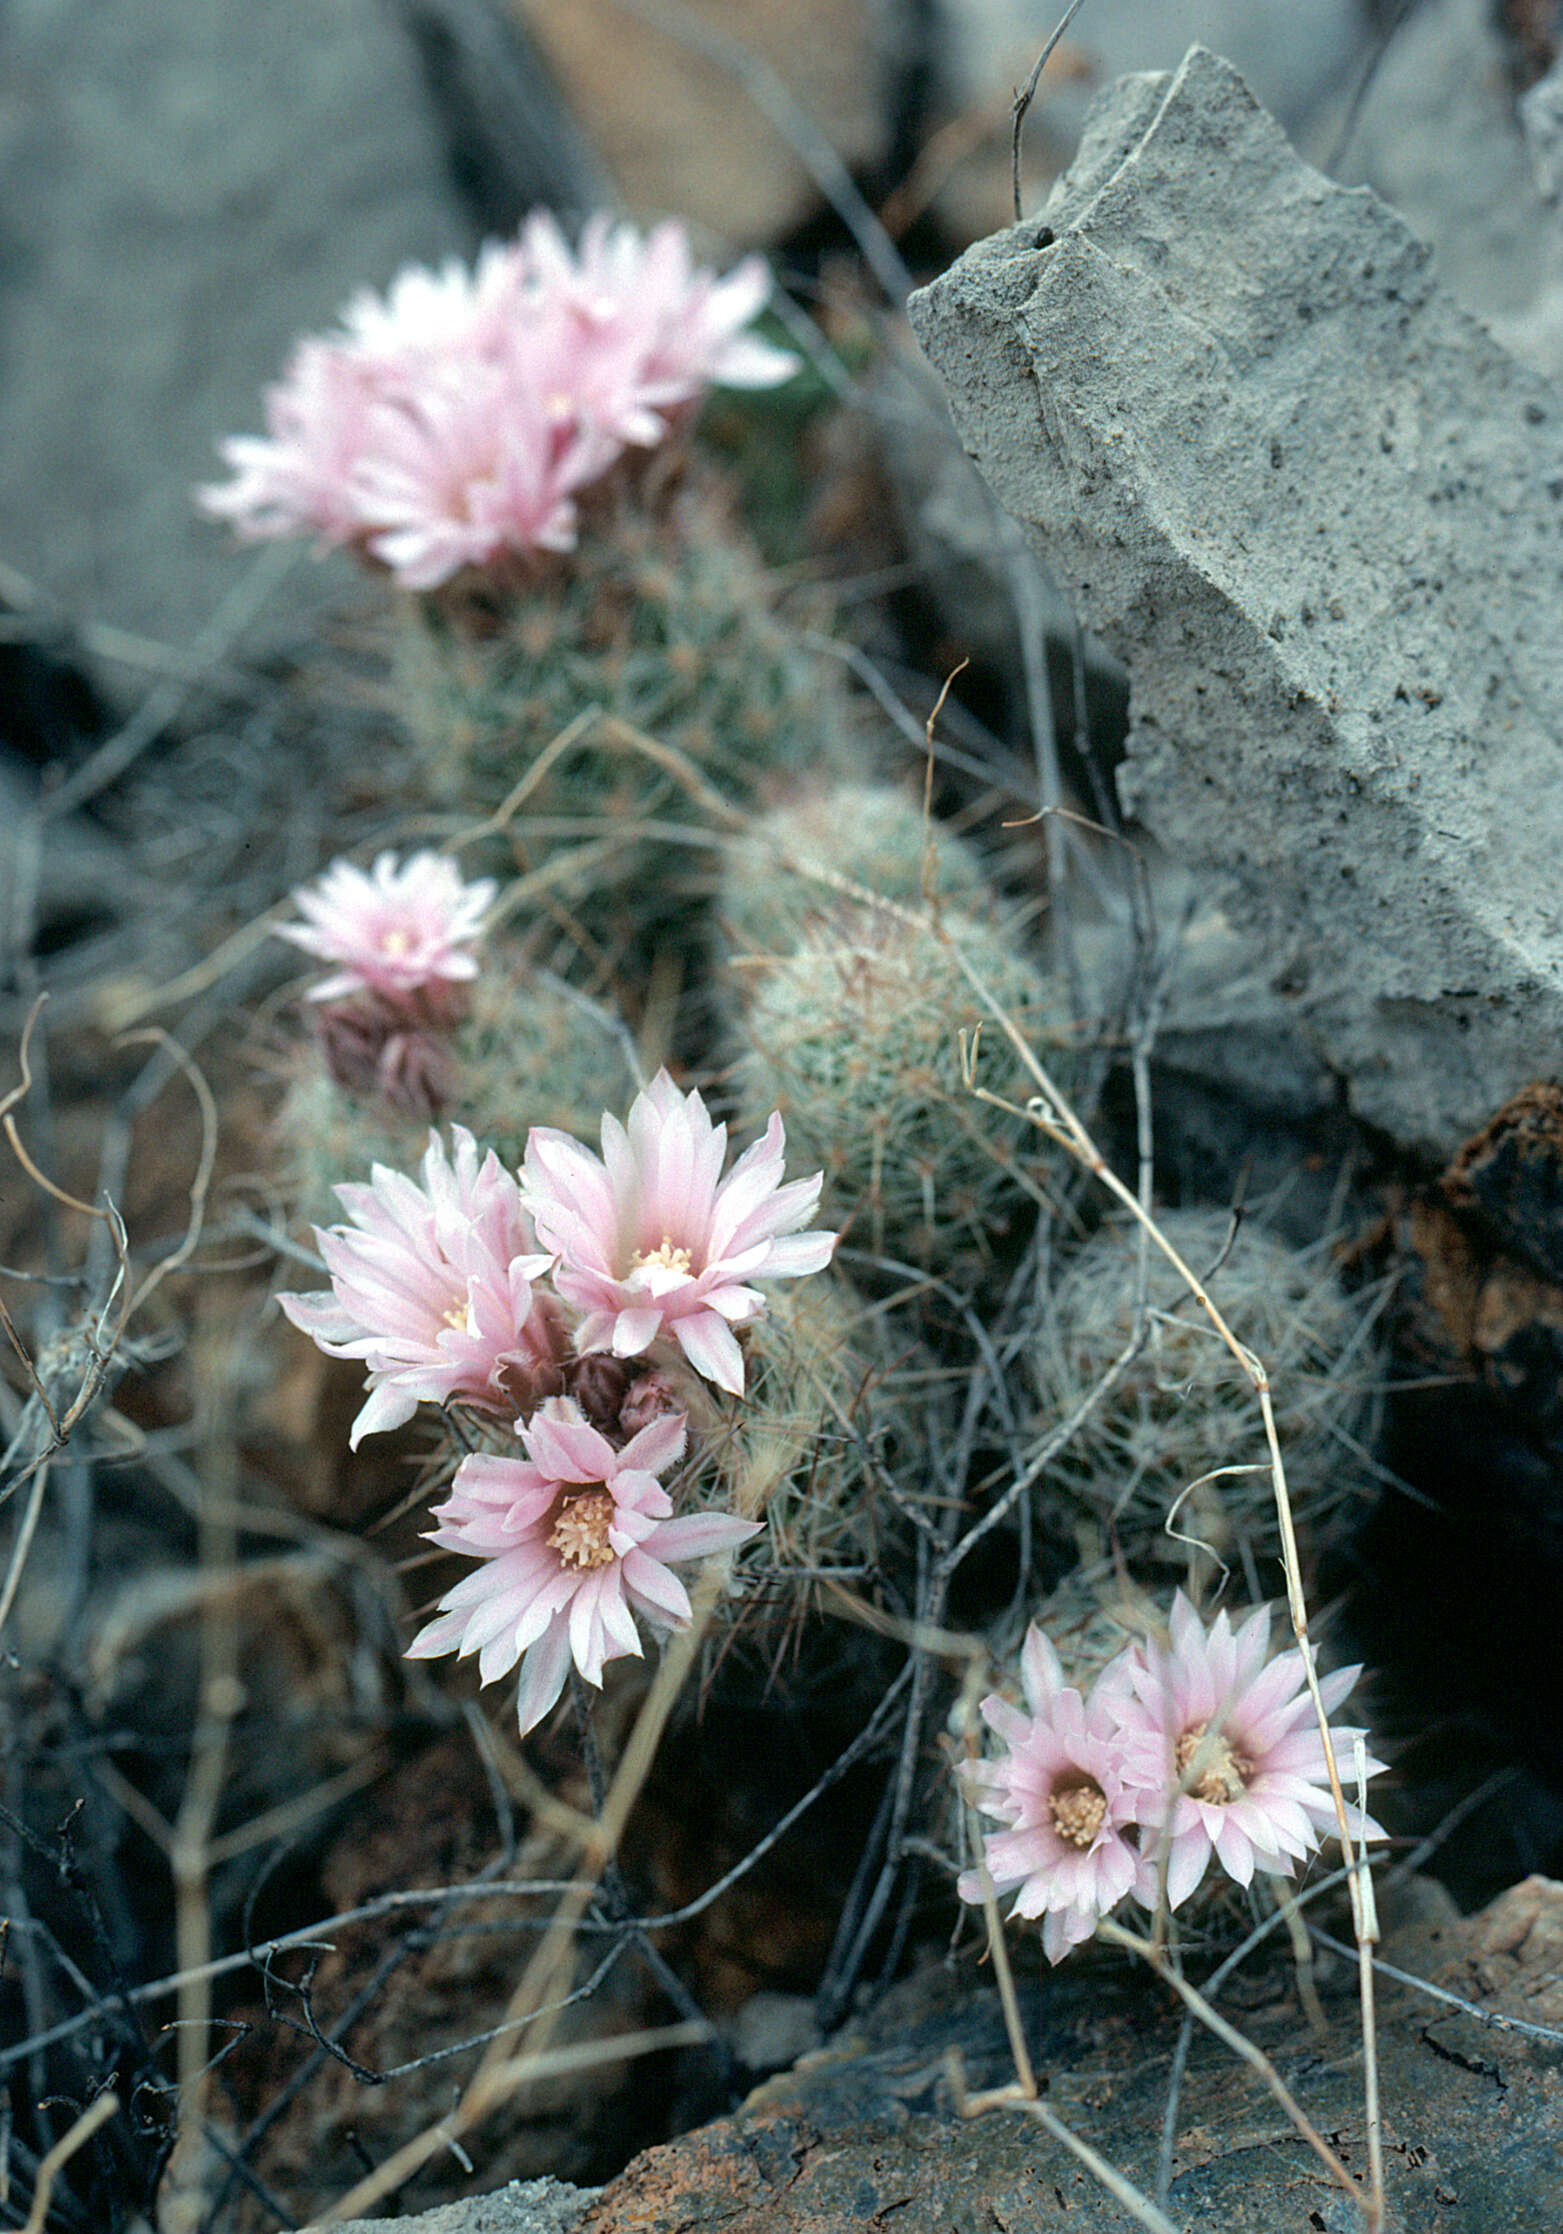 Image of whitecolumn foxtail cactus